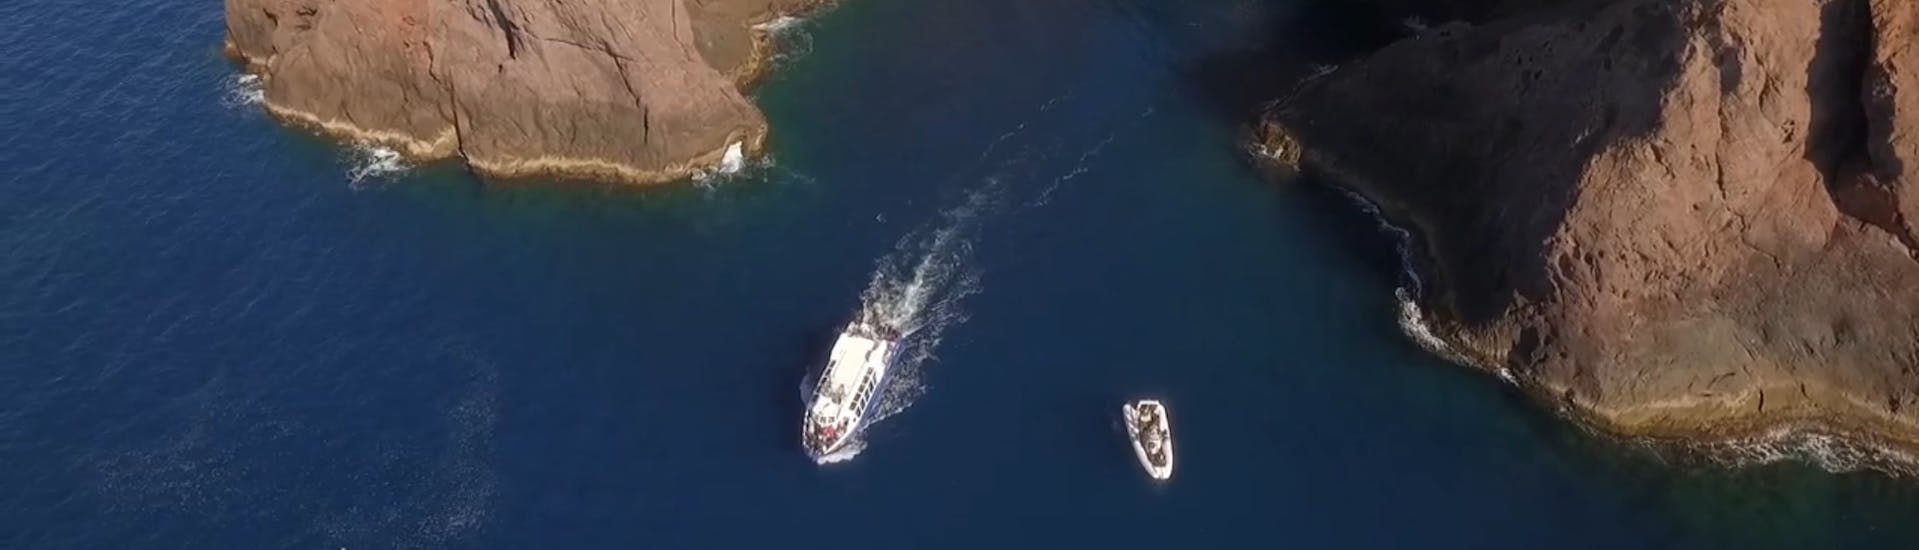 Bateau de Tra Mare e Monti pendant l'excursion en bateau de Calvi à Scandola avec snorkeling.